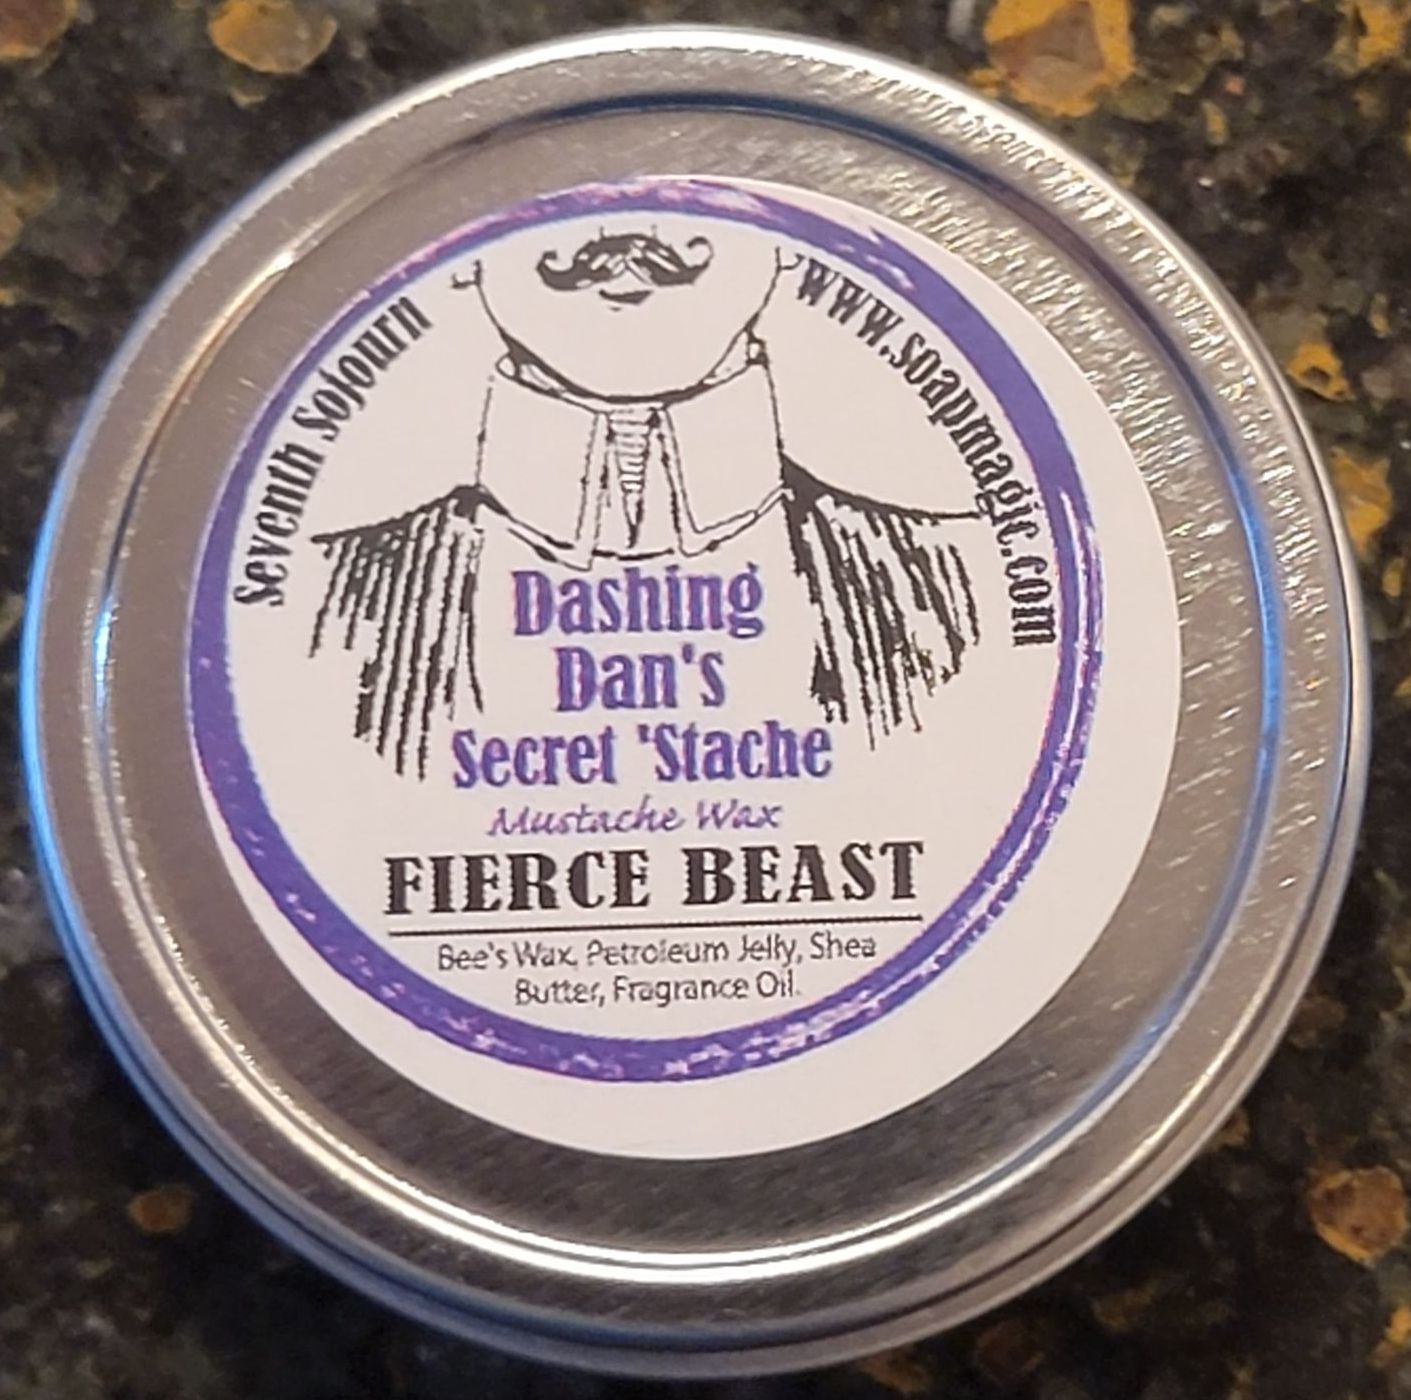 Fierce Beast Mustache Wax